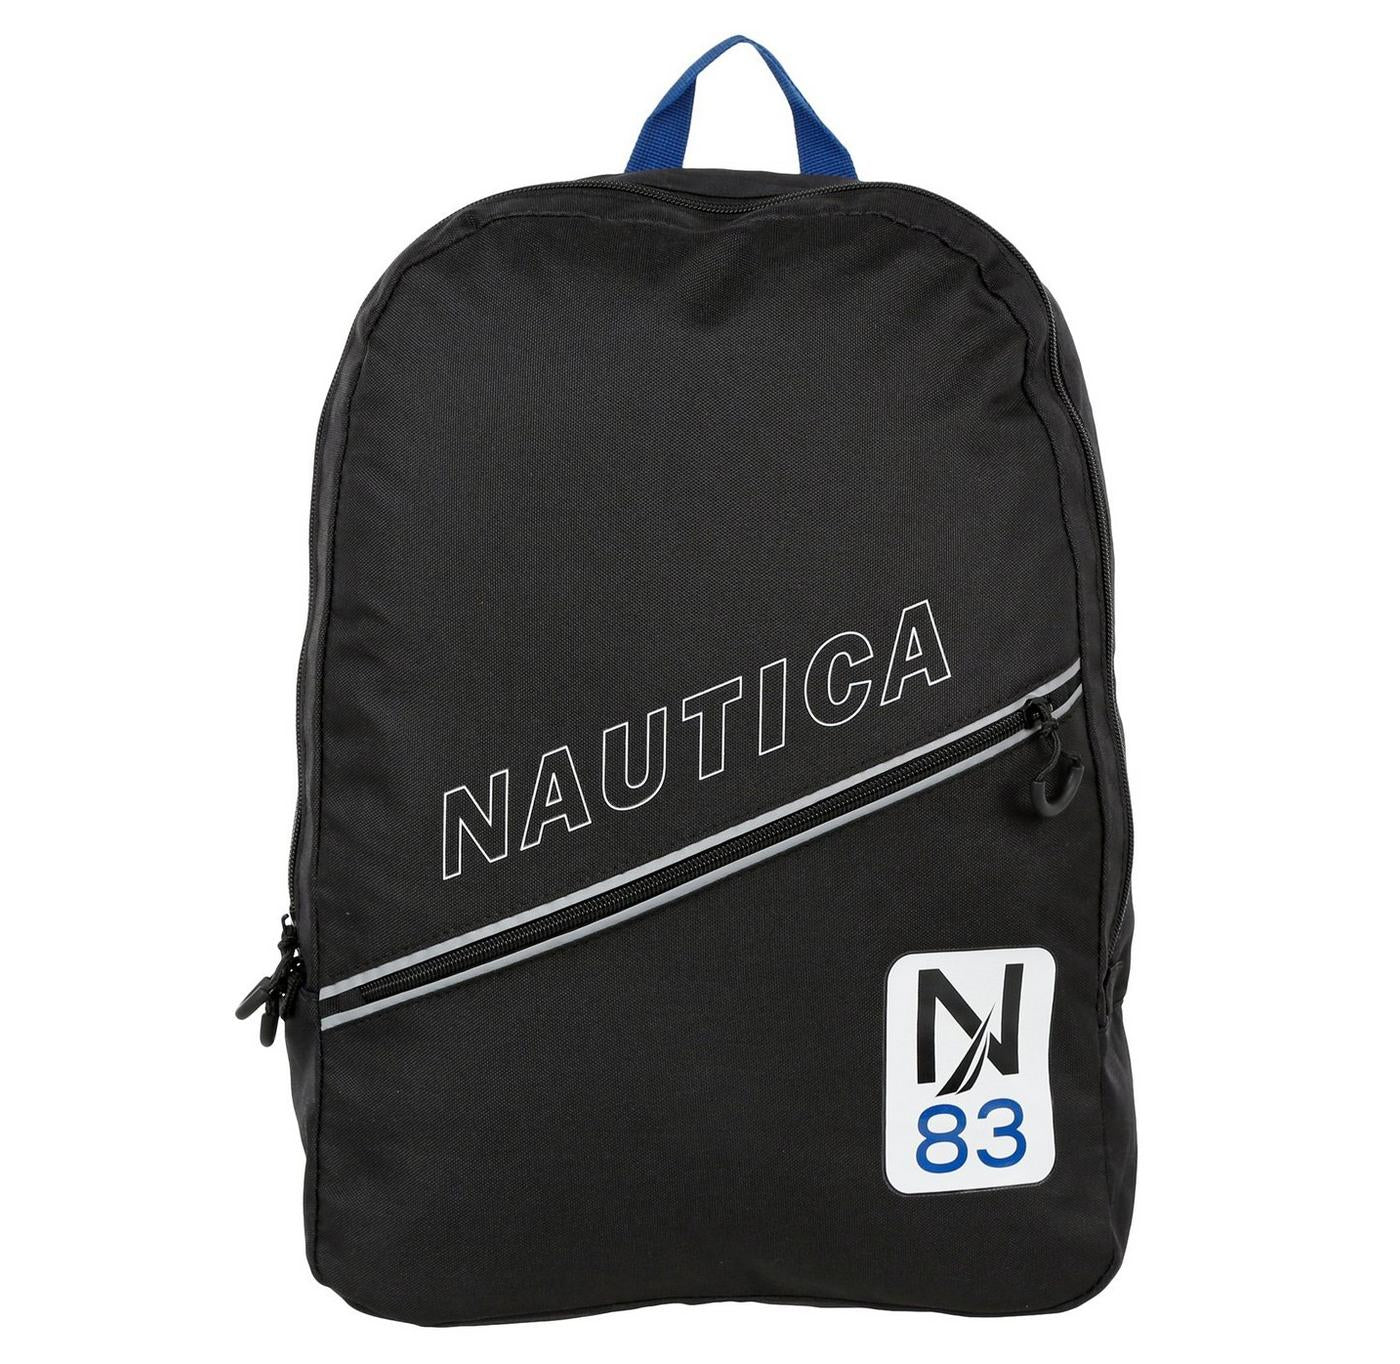 Nautica Diagonal Zipper N83 Backpack (Black/White)